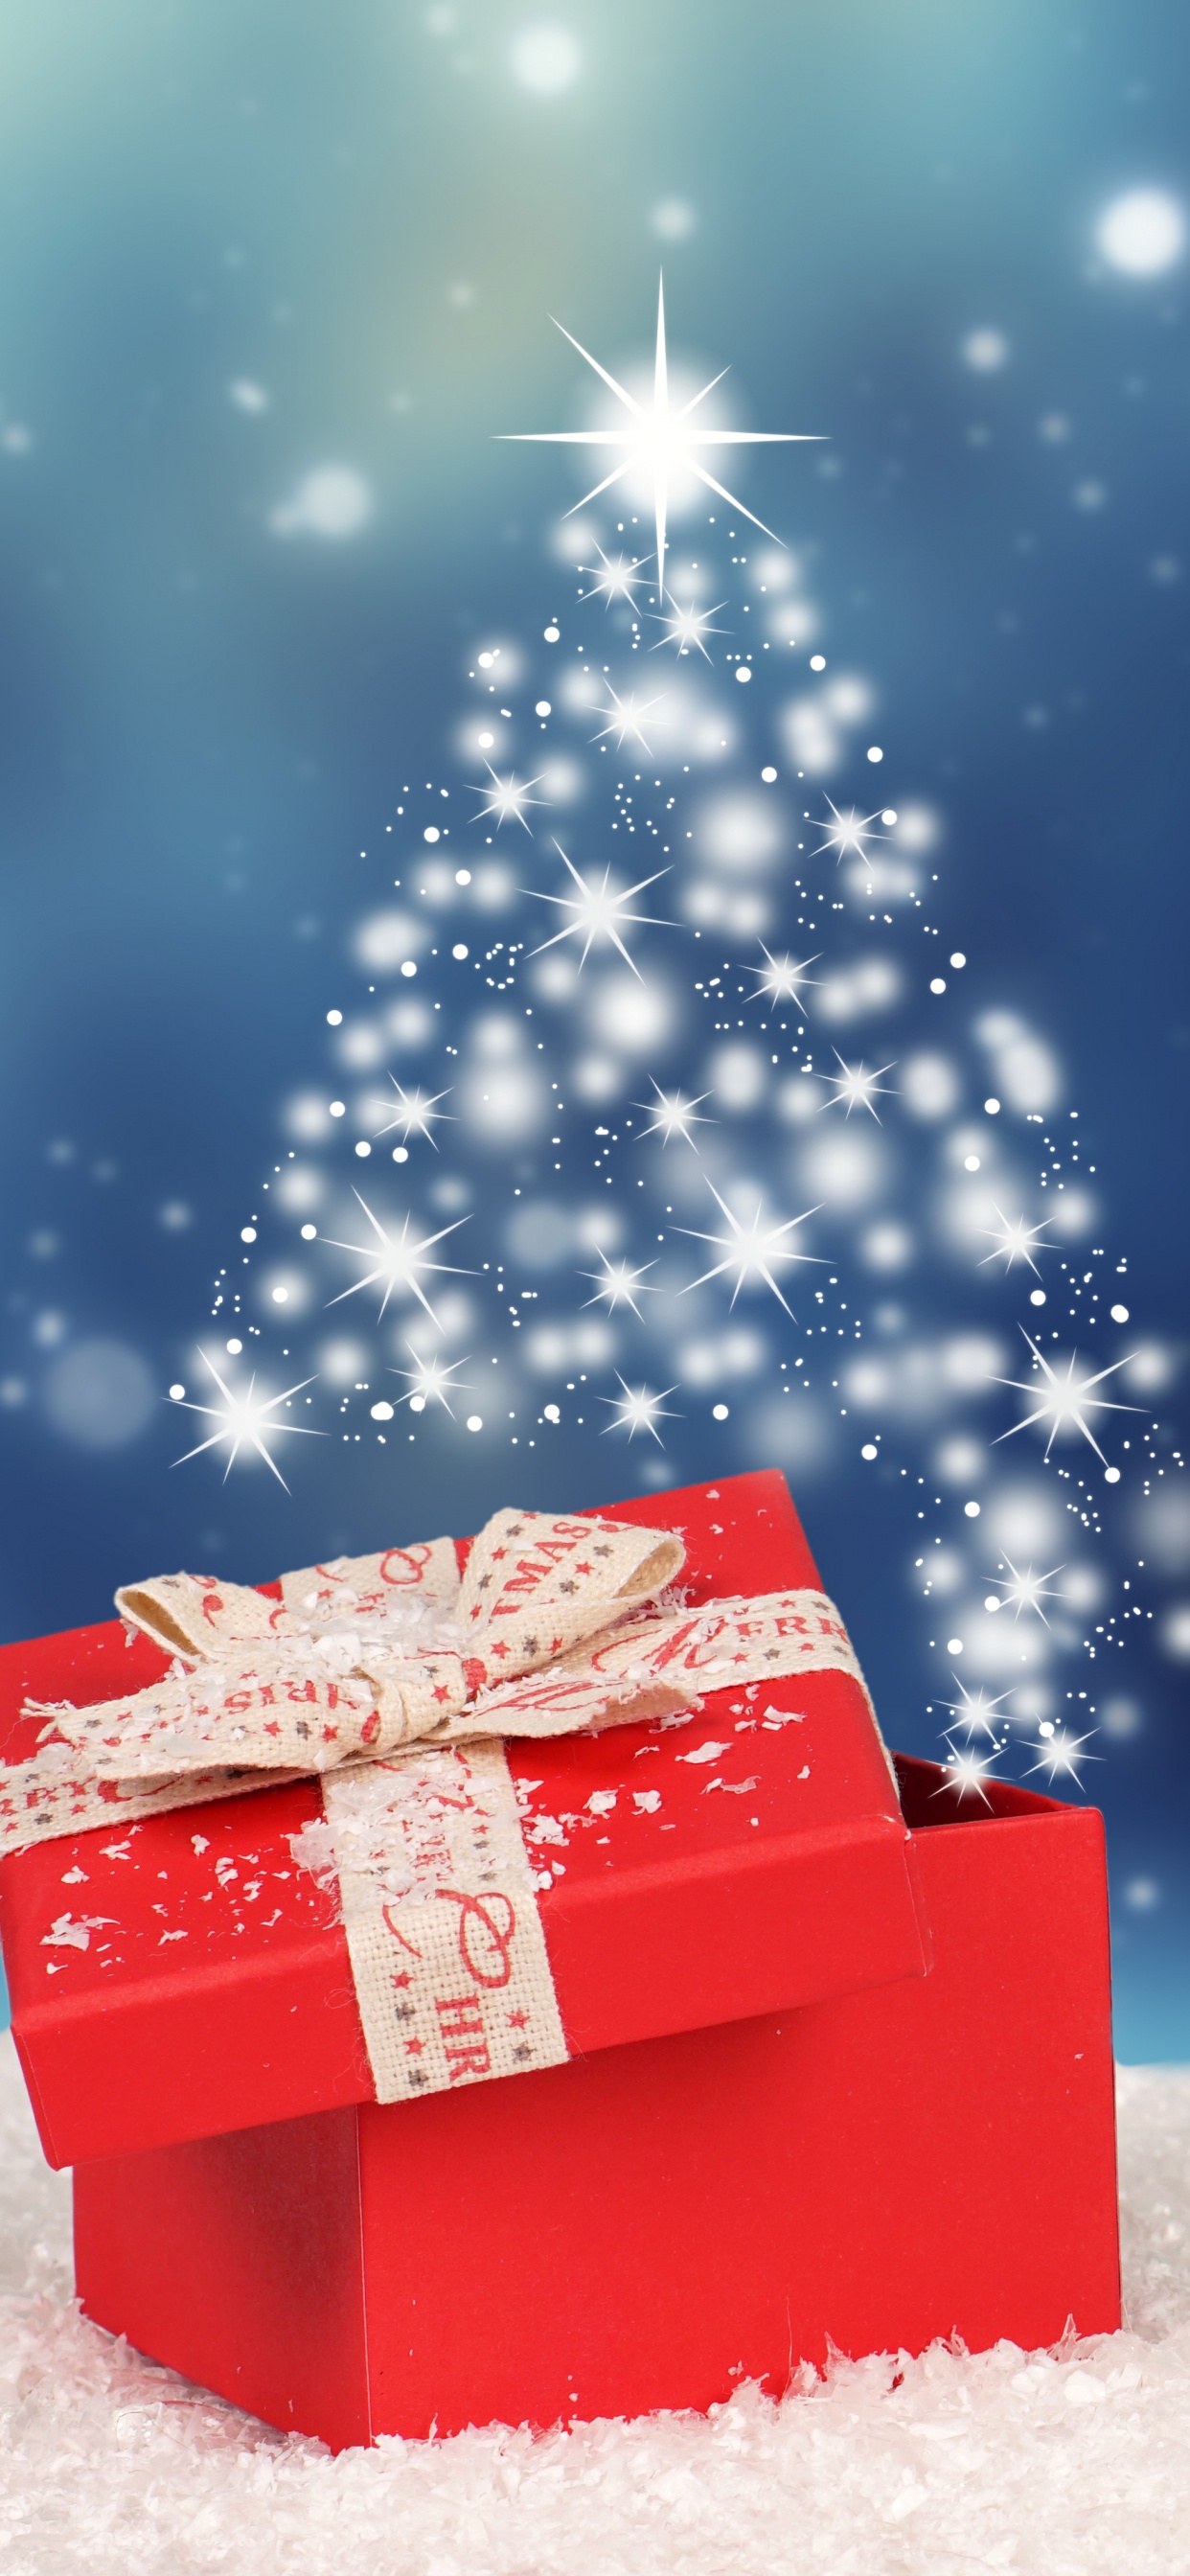 圣诞节那天, 冬天, 圣诞节, 圣诞树, 圣诞前夕 壁纸 1242x2688 允许